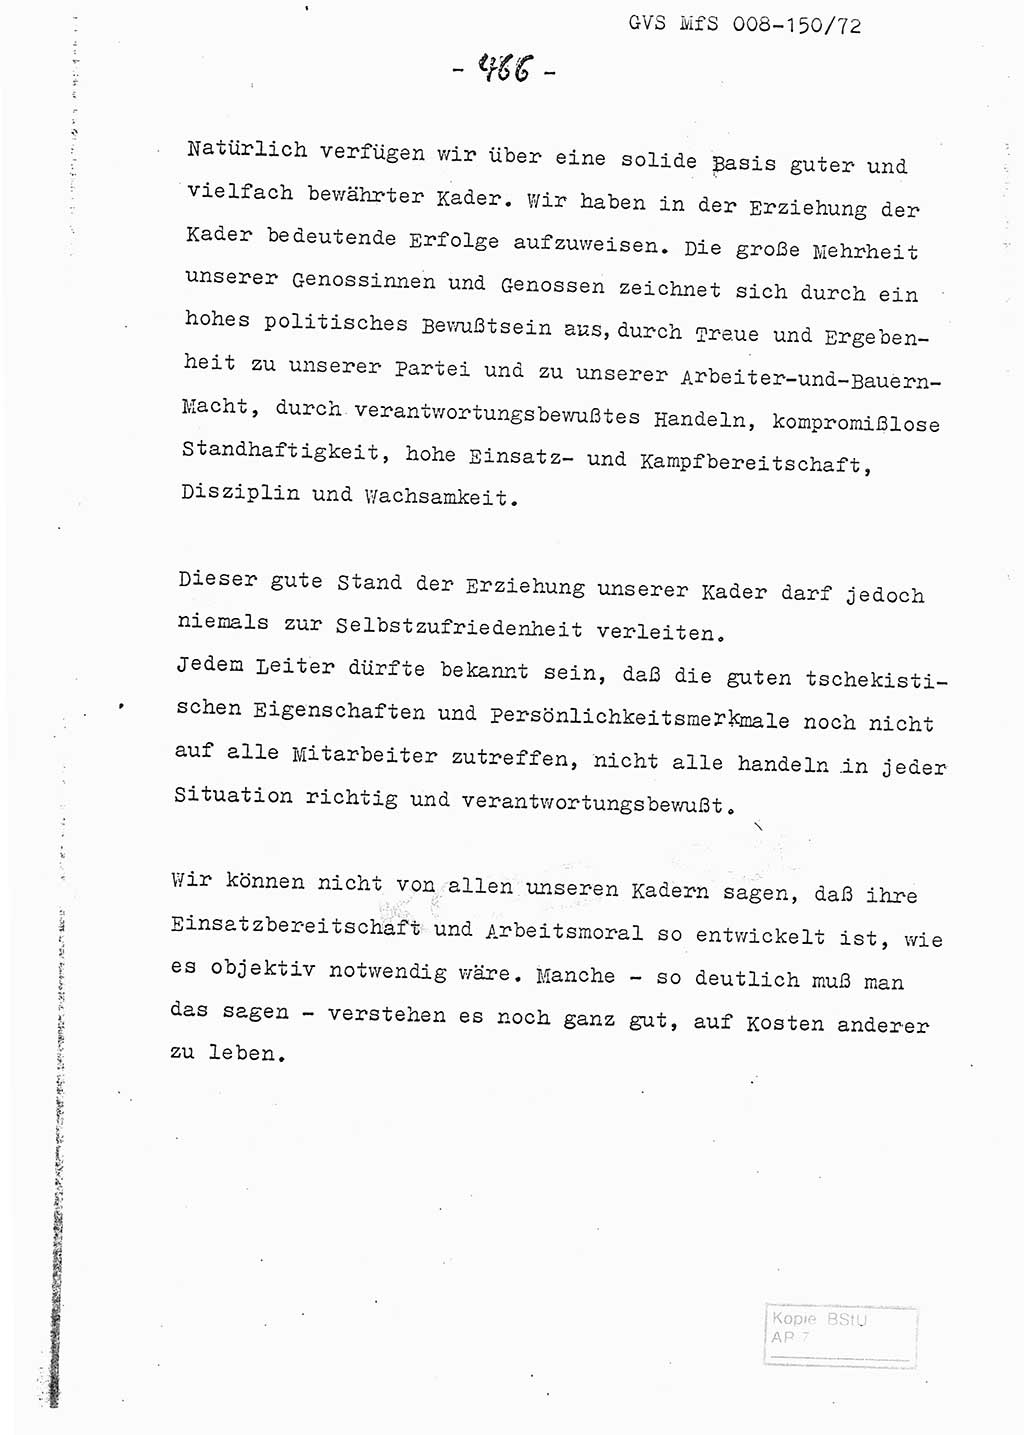 Referat (Entwurf) des Genossen Minister (Generaloberst Erich Mielke) auf der Dienstkonferenz 1972, Ministerium für Staatssicherheit (MfS) [Deutsche Demokratische Republik (DDR)], Der Minister, Geheime Verschlußsache (GVS) 008-150/72, Berlin 25.2.1972, Seite 466 (Ref. Entw. DK MfS DDR Min. GVS 008-150/72 1972, S. 466)